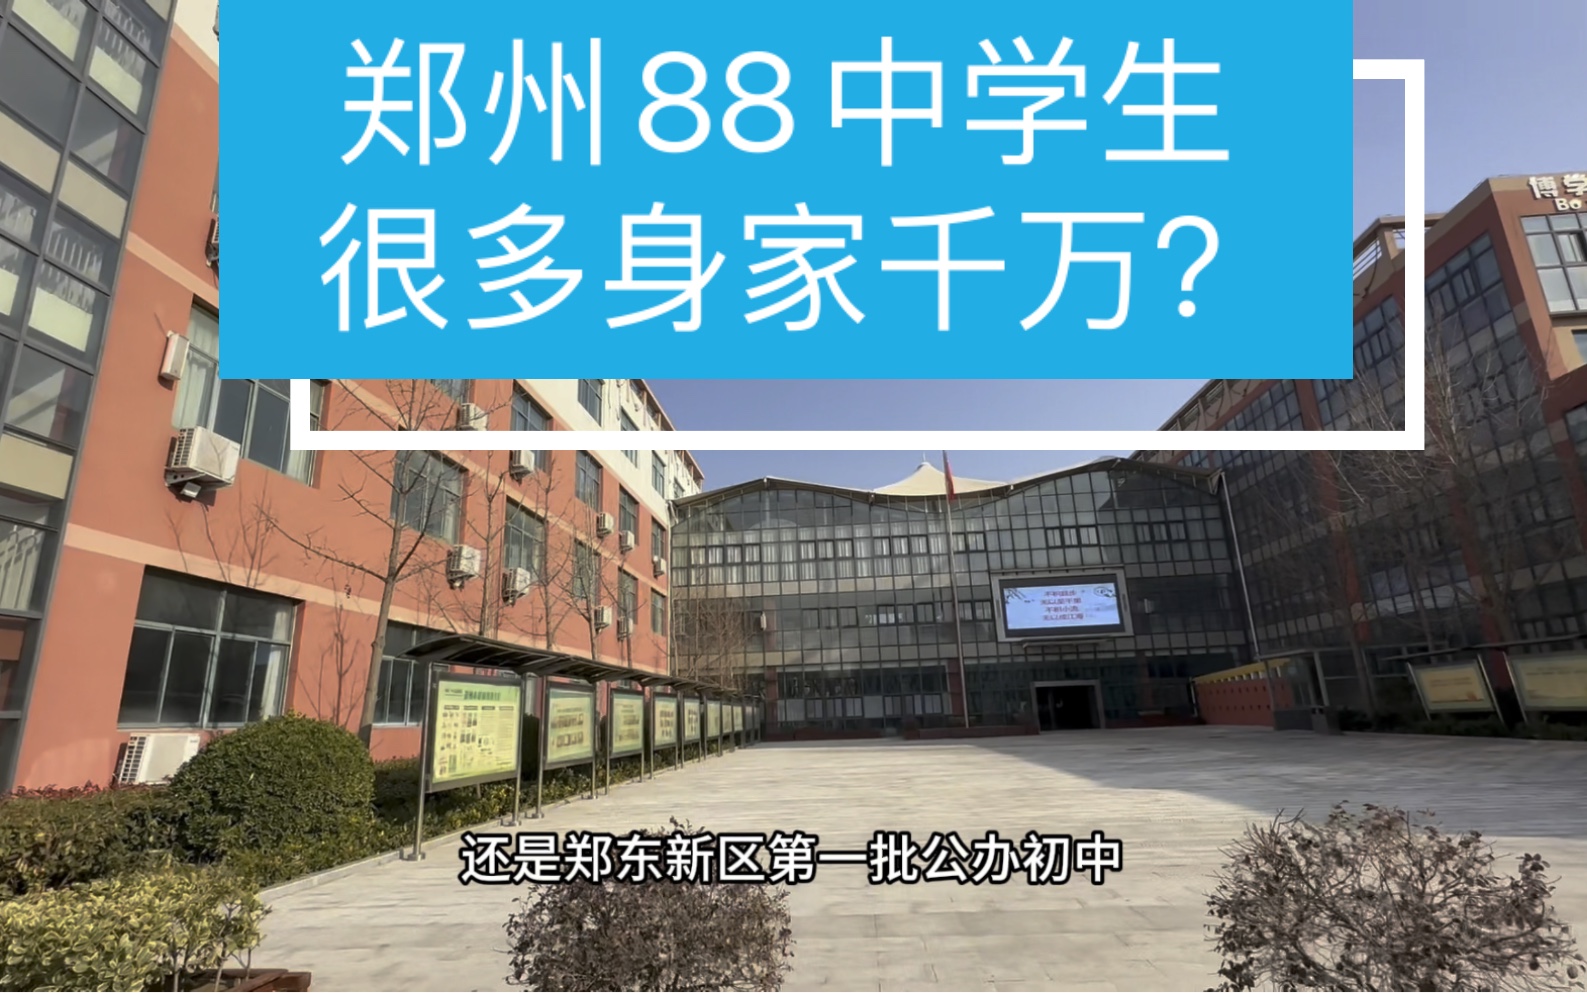 郑州88中也就是现在的郑州一中众意路校区,此校怎么样?